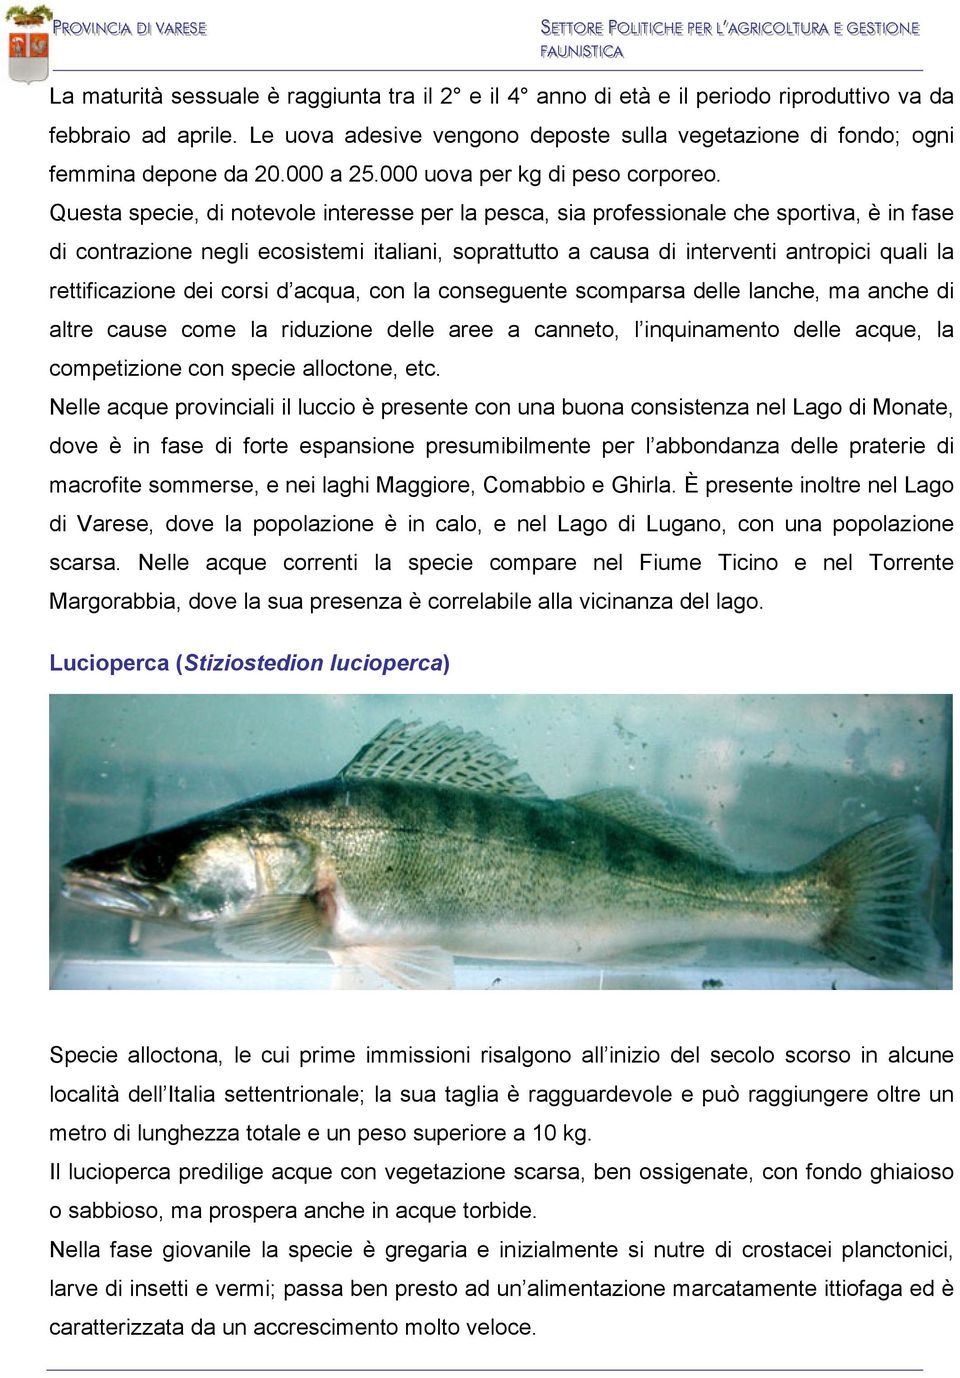 Questa specie, di notevole interesse per la pesca, sia professionale che sportiva, è in fase di contrazione negli ecosistemi italiani, soprattutto a causa di interventi antropici quali la